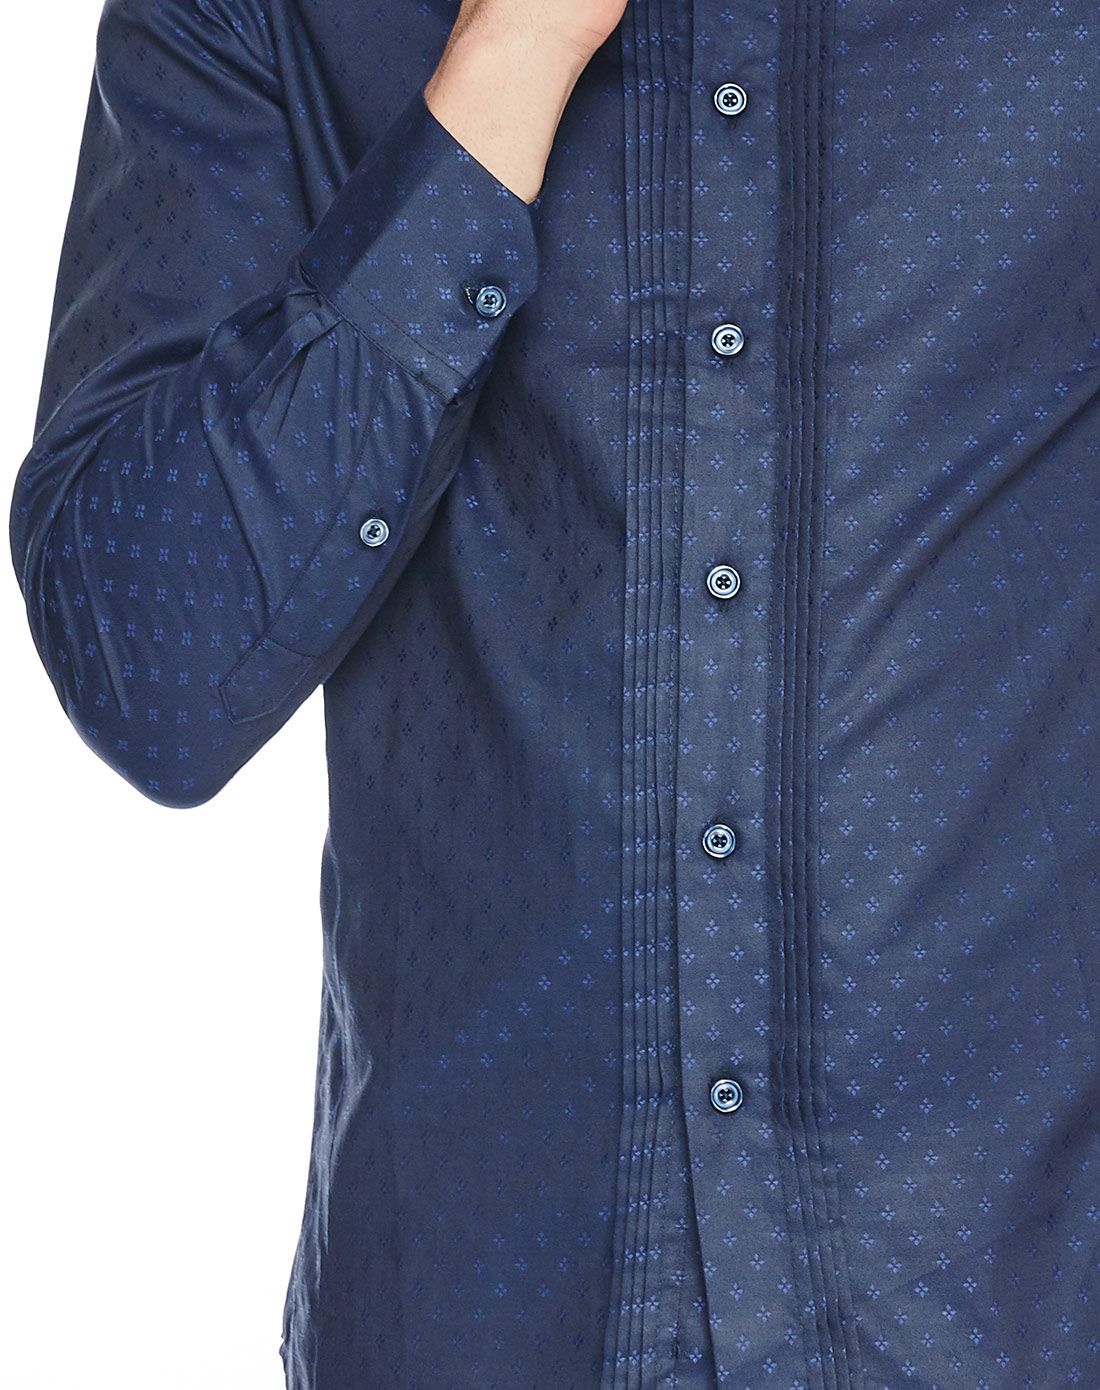 2016新款藏蓝色英伦绅士纯棉长袖衬衫